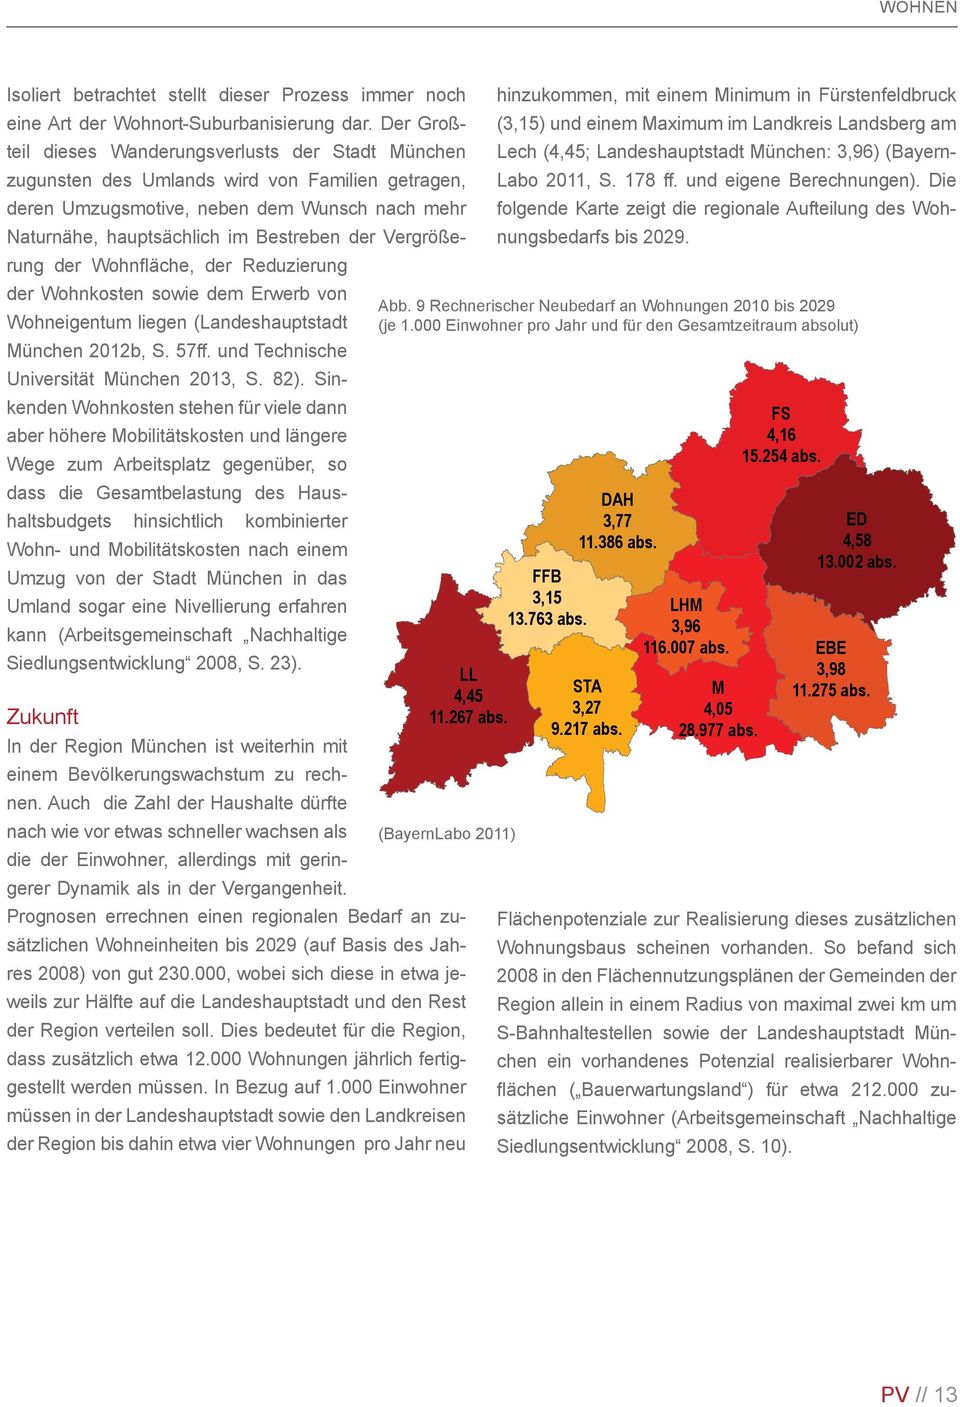 Vergrößerung der Wohnfläche, der Reduzierung der Wohnkosten sowie dem Erwerb von Wohneigentum liegen (Landeshauptstadt München 2012b, S. 57ff. und Technische Universität München 2013, S. 82).